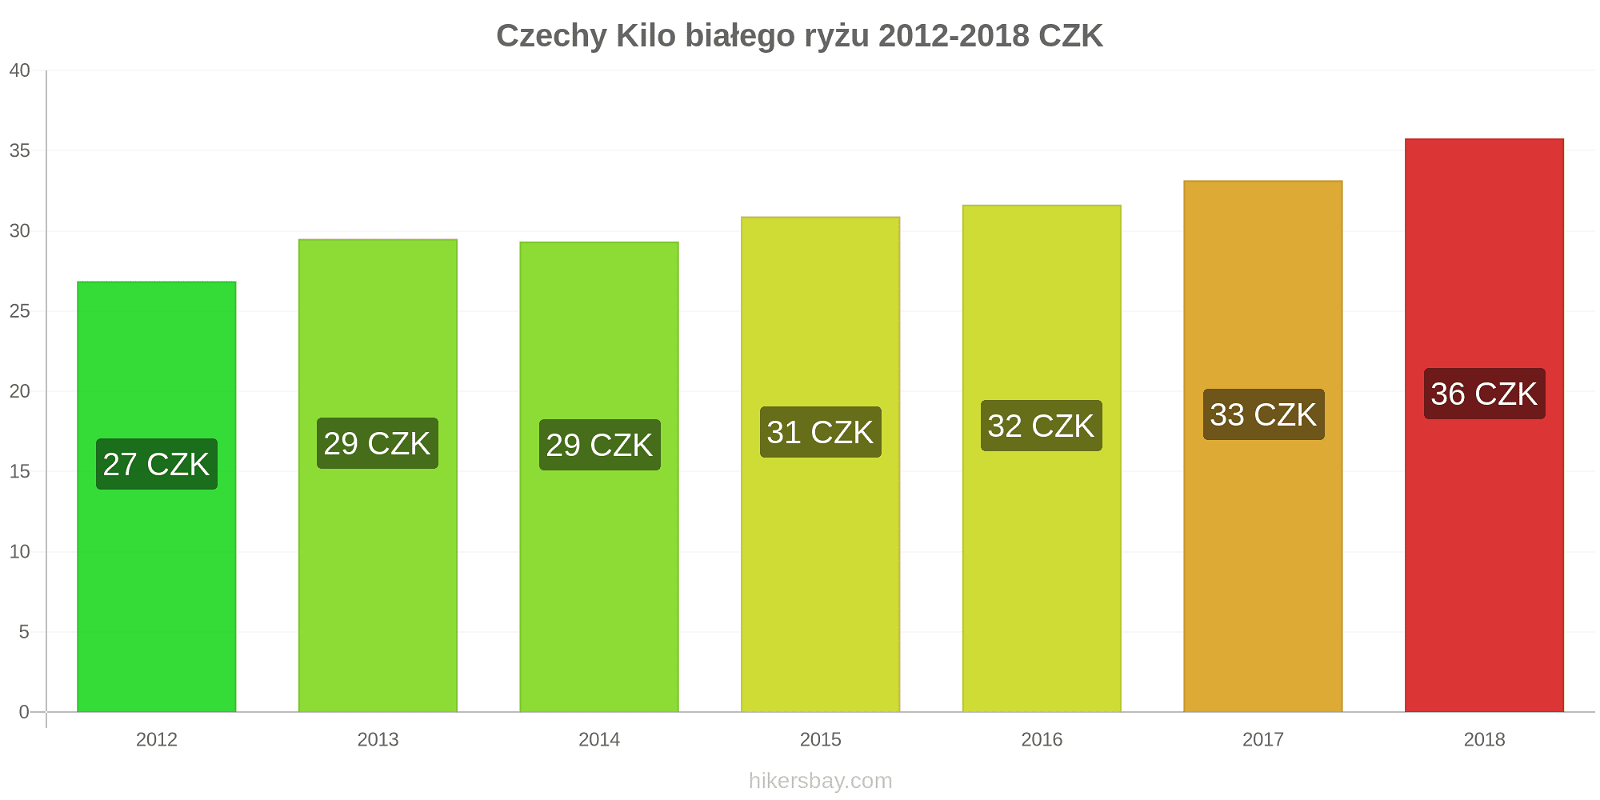 Czechy zmiany cen Kilo białego ryżu hikersbay.com